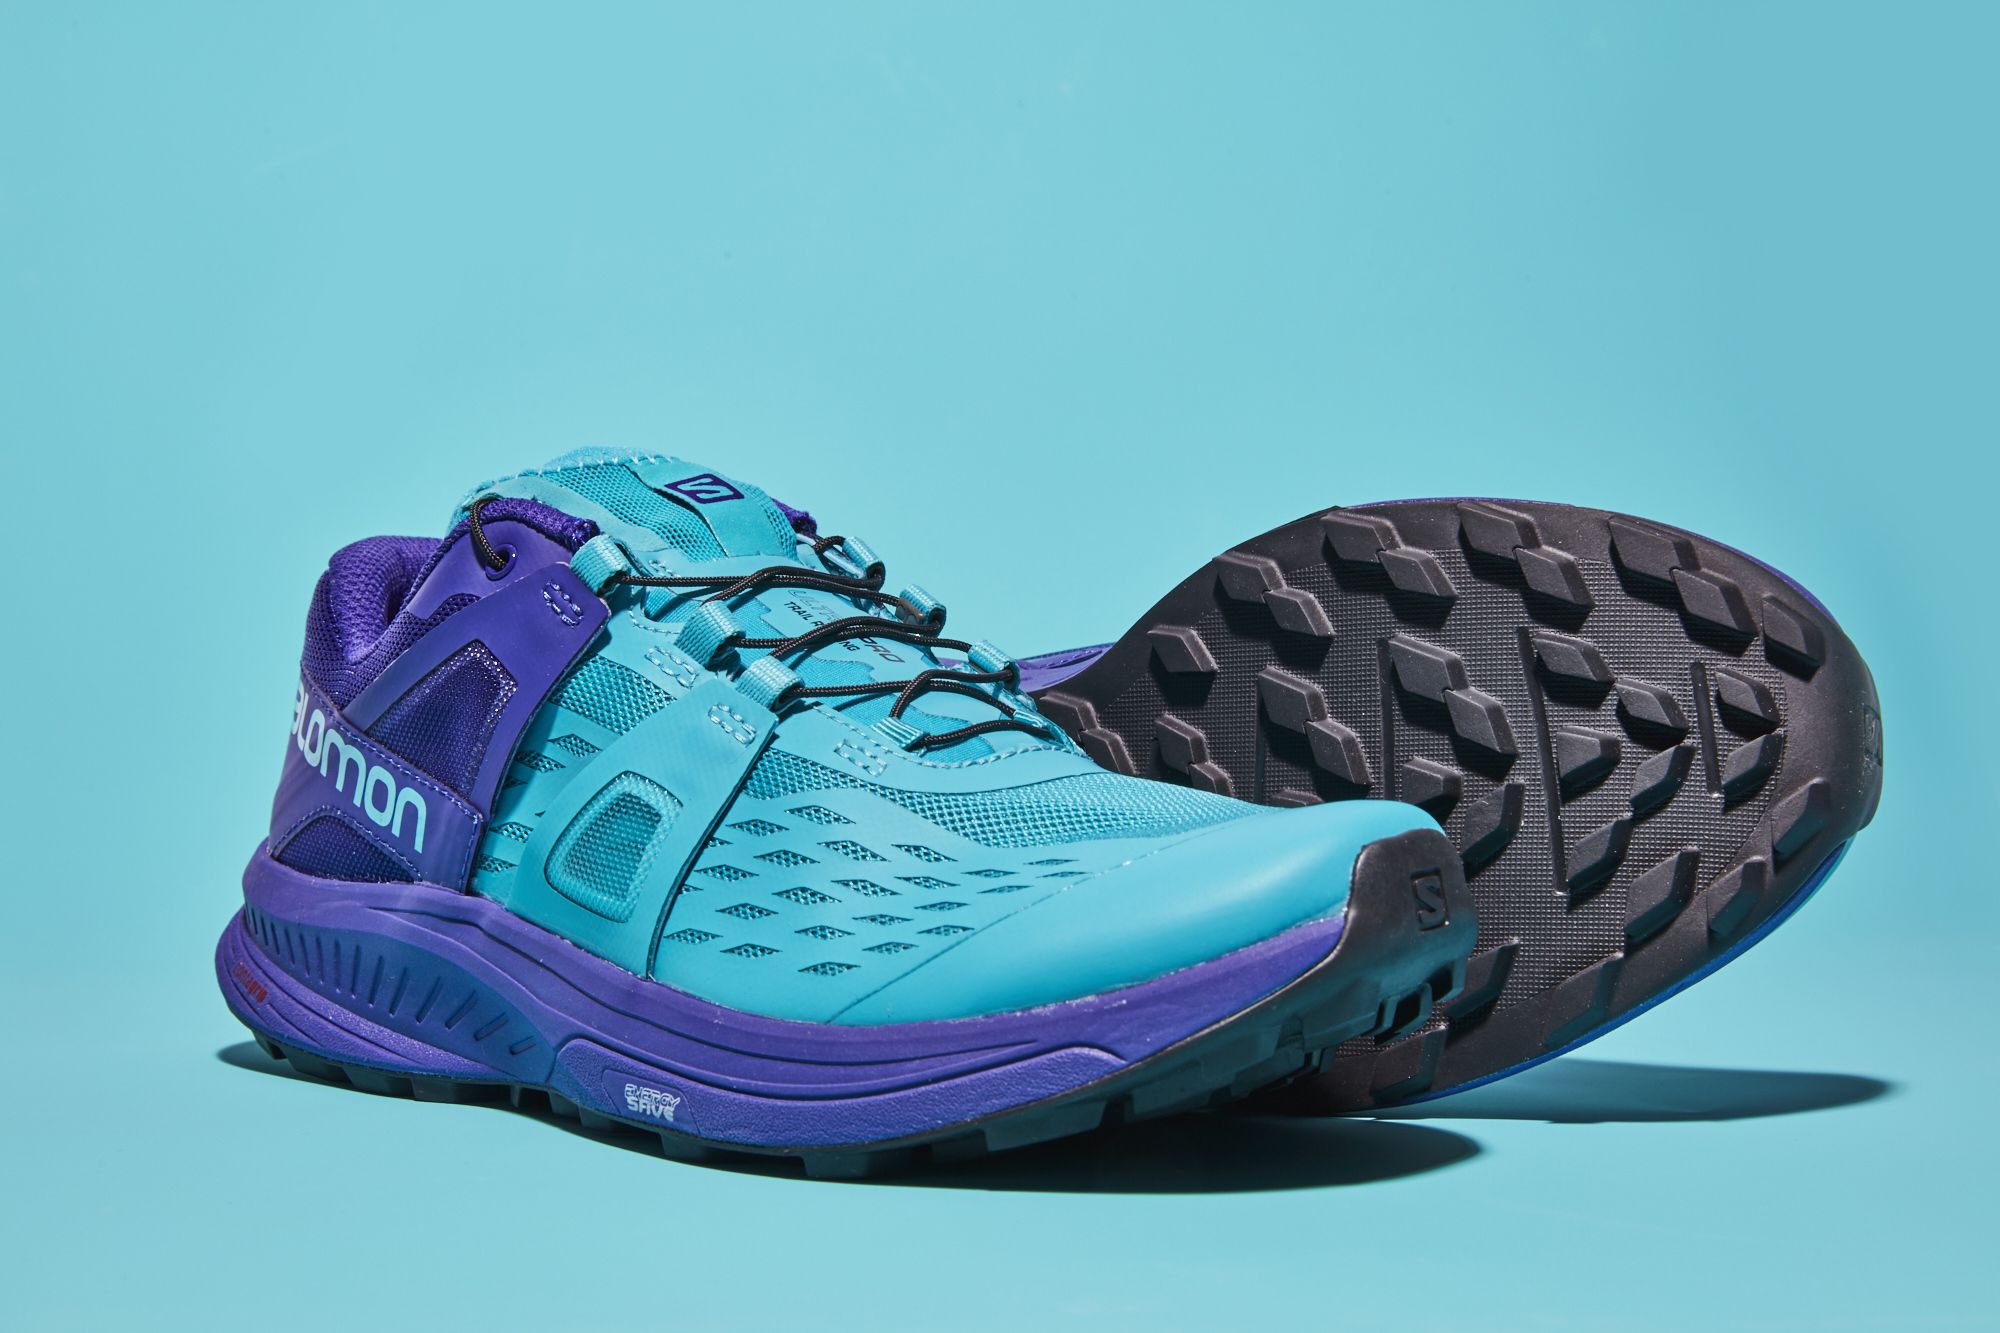 Đế giày thiết kế đặc biệt giúp tăng cường độ bám, chống trơn trượt trong những chuyến leo núi, chinh phục địa hình